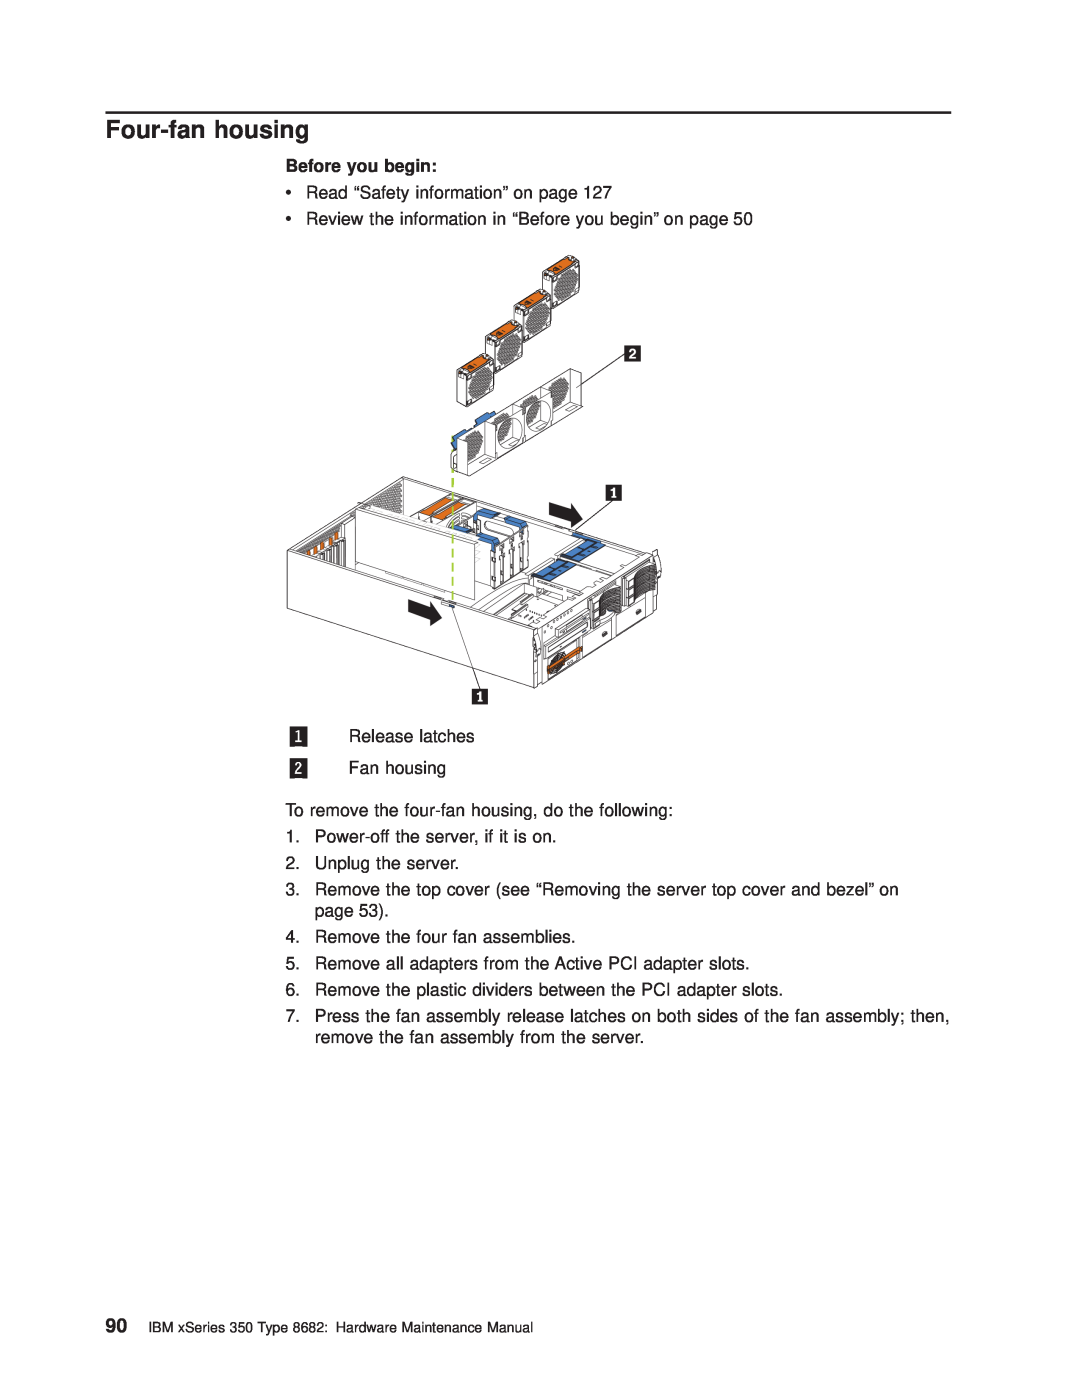 IBM manual Four-fan housing, Before you begin, IBM xSeries 350 Type 8682 Hardware Maintenance Manual 